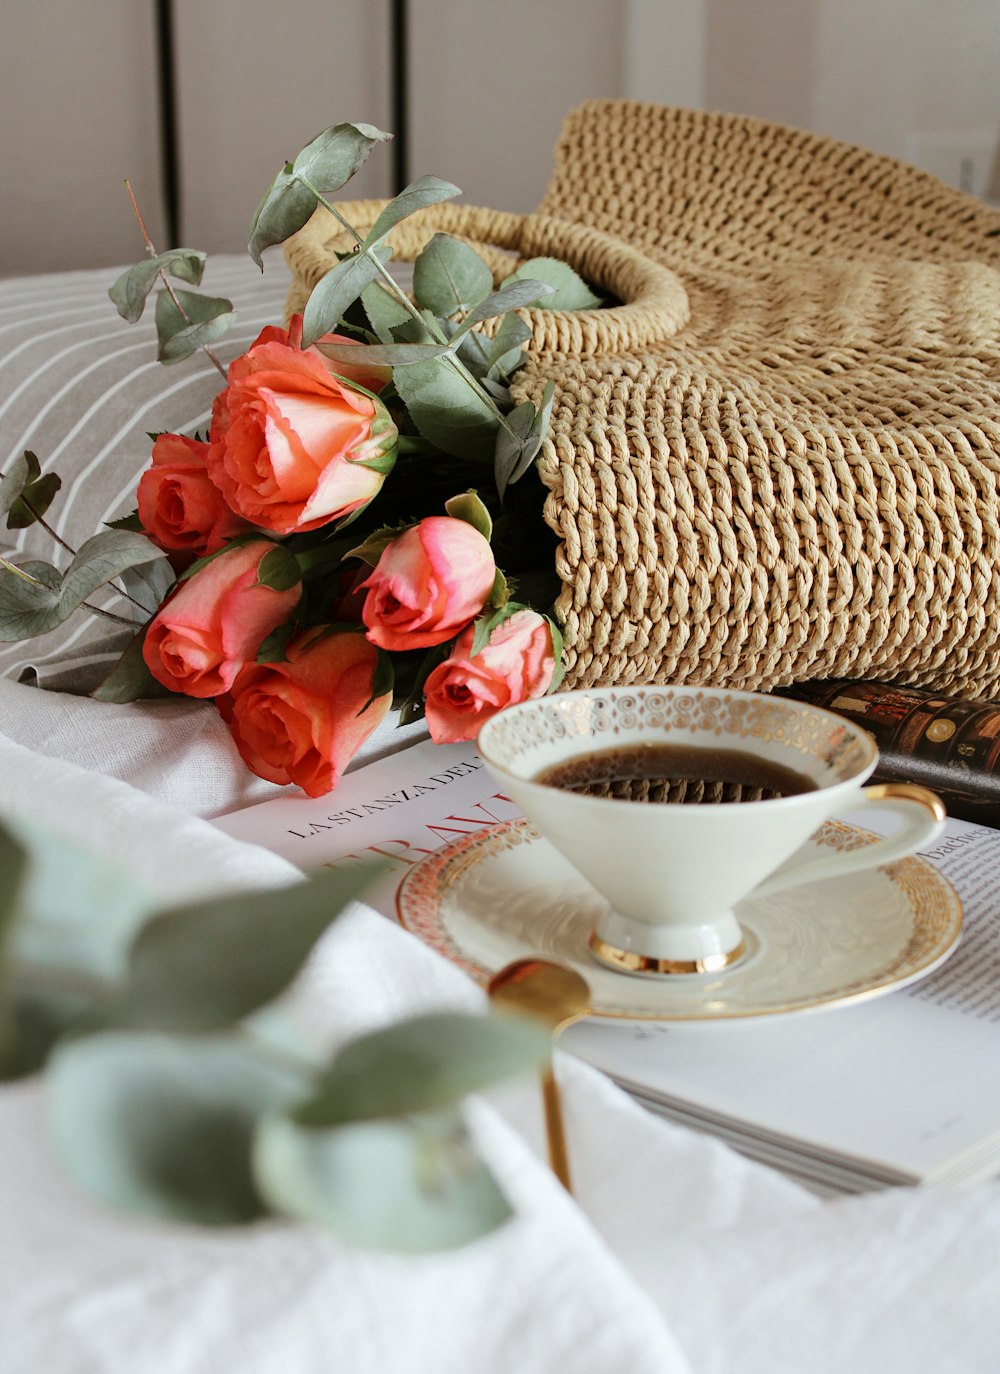 Rose rosse accanto a tazza da tè in ceramica bianca su tovaglia bianca